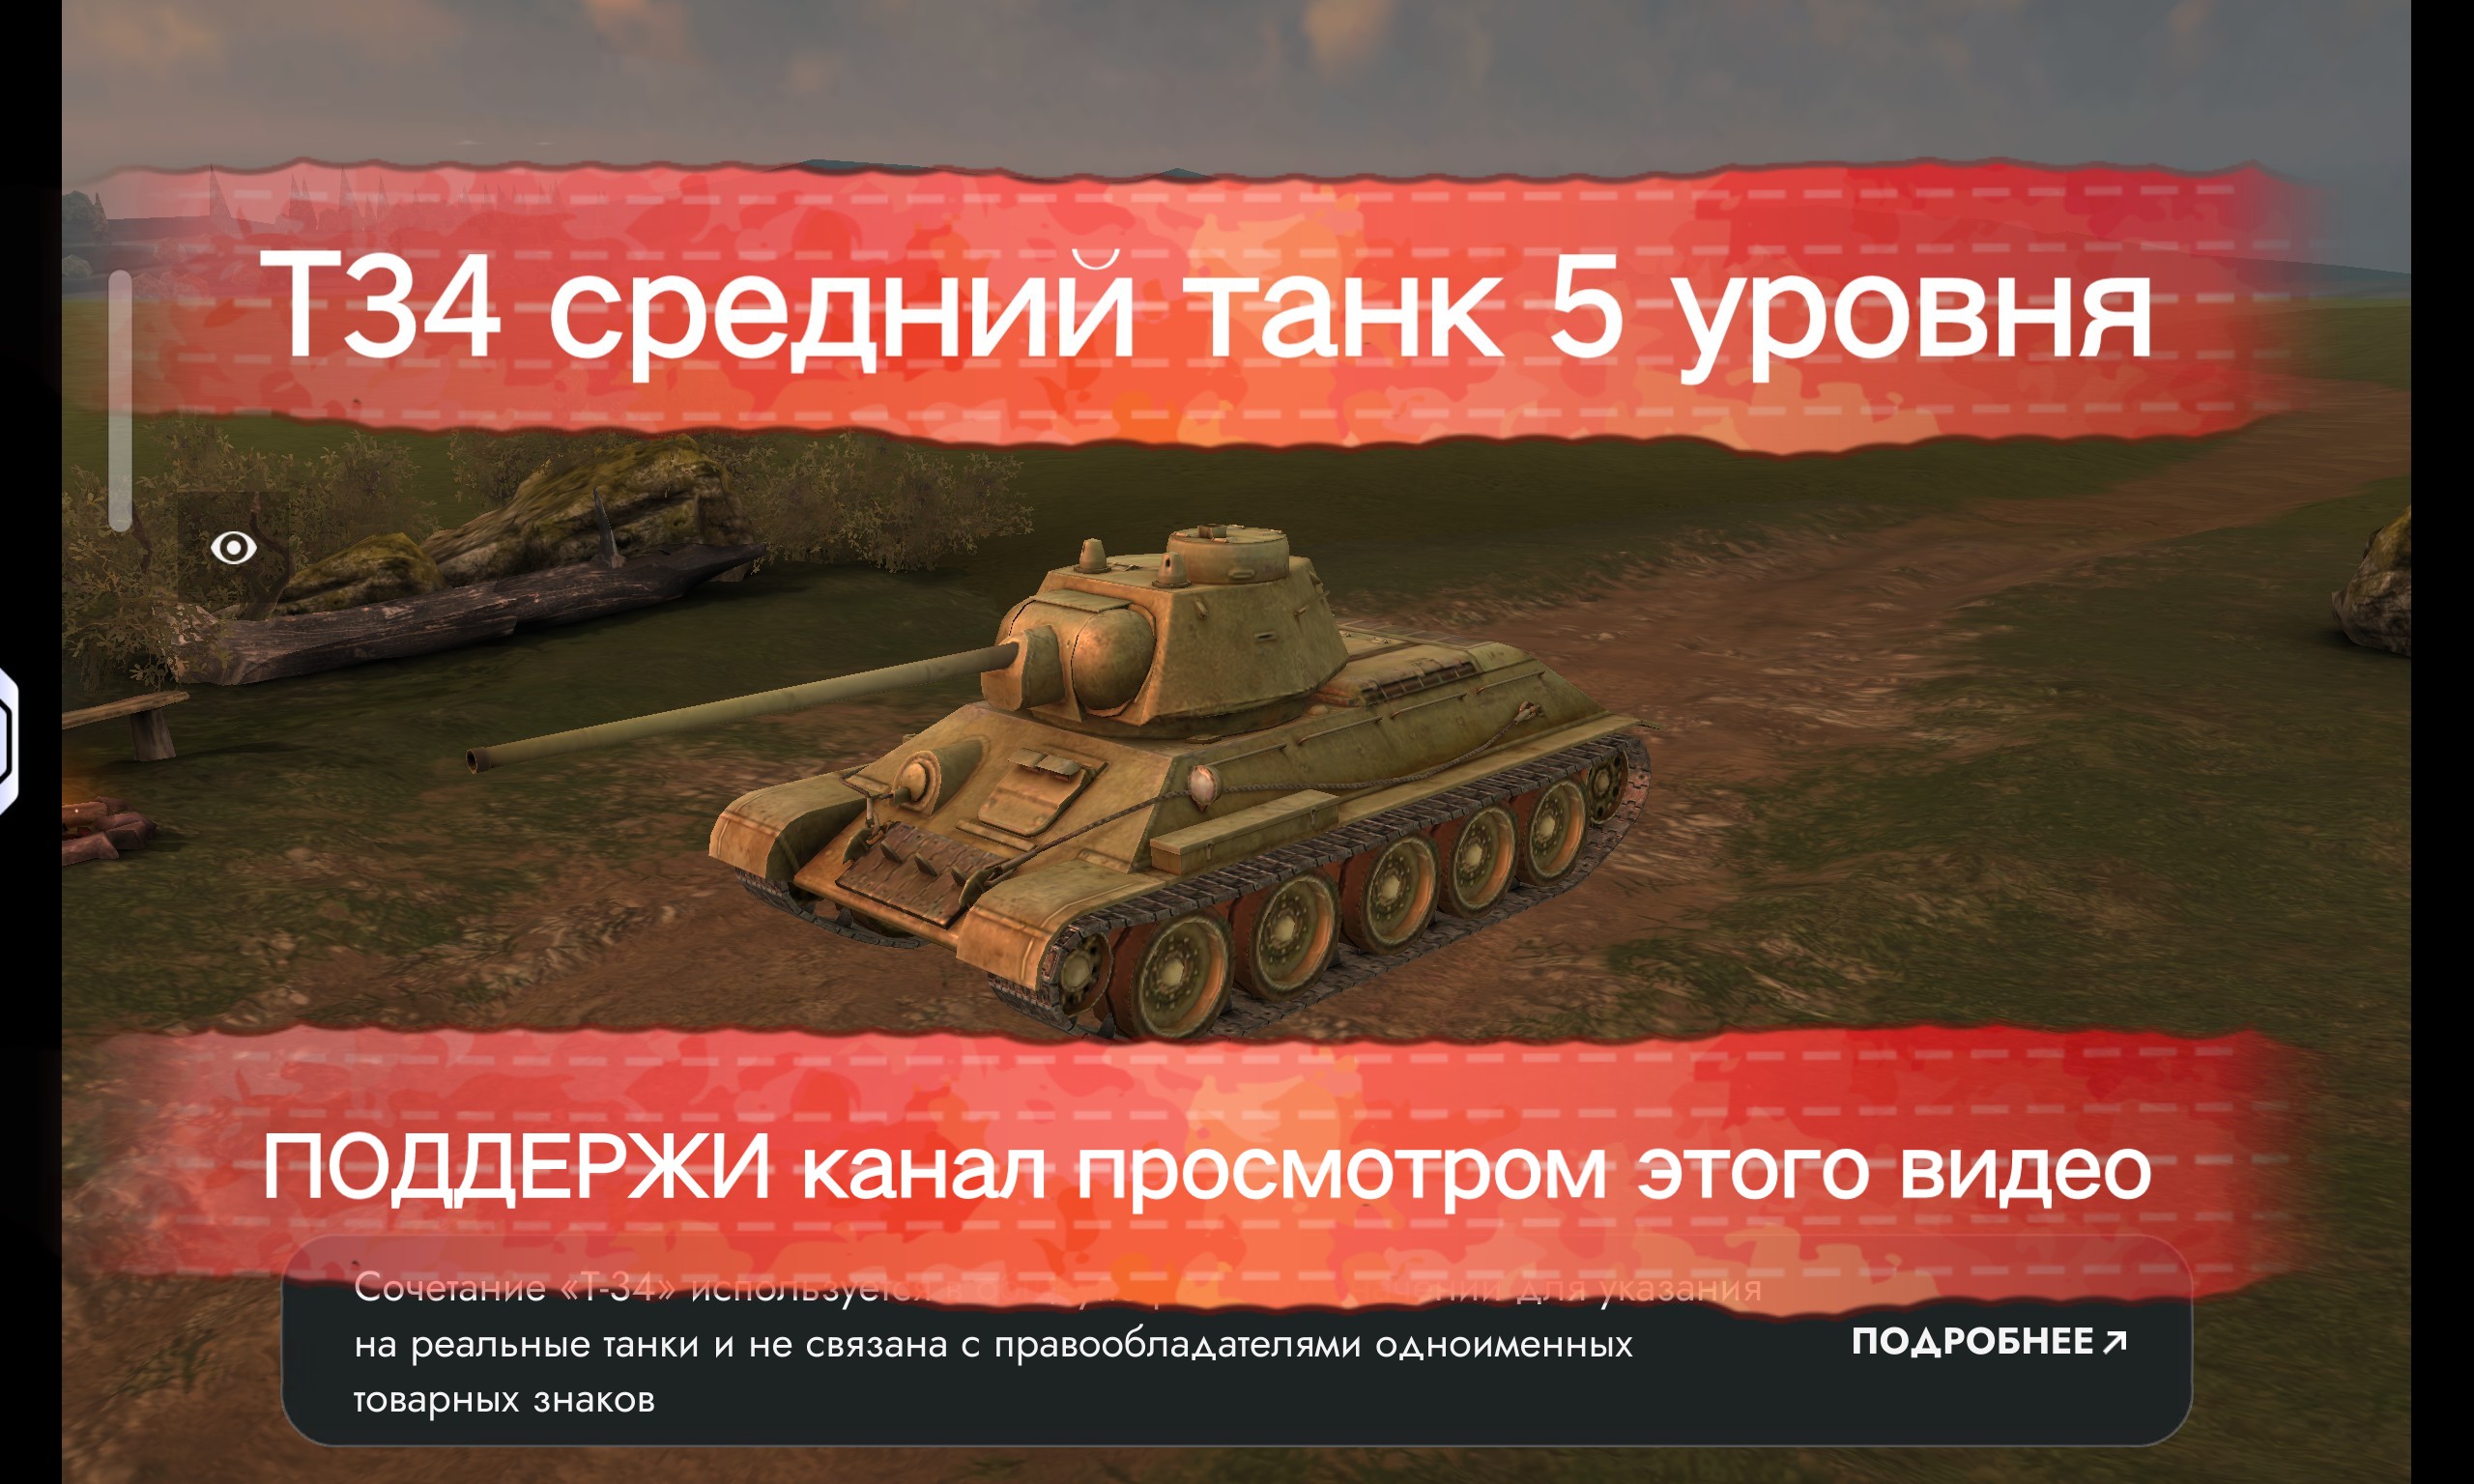 Танк блиц Т34 средний танк Советской ветки развития.ПОДДЕРЖИ КАНАЛ ПРОСМОТРОМ ДАННОГО ВИДЕО